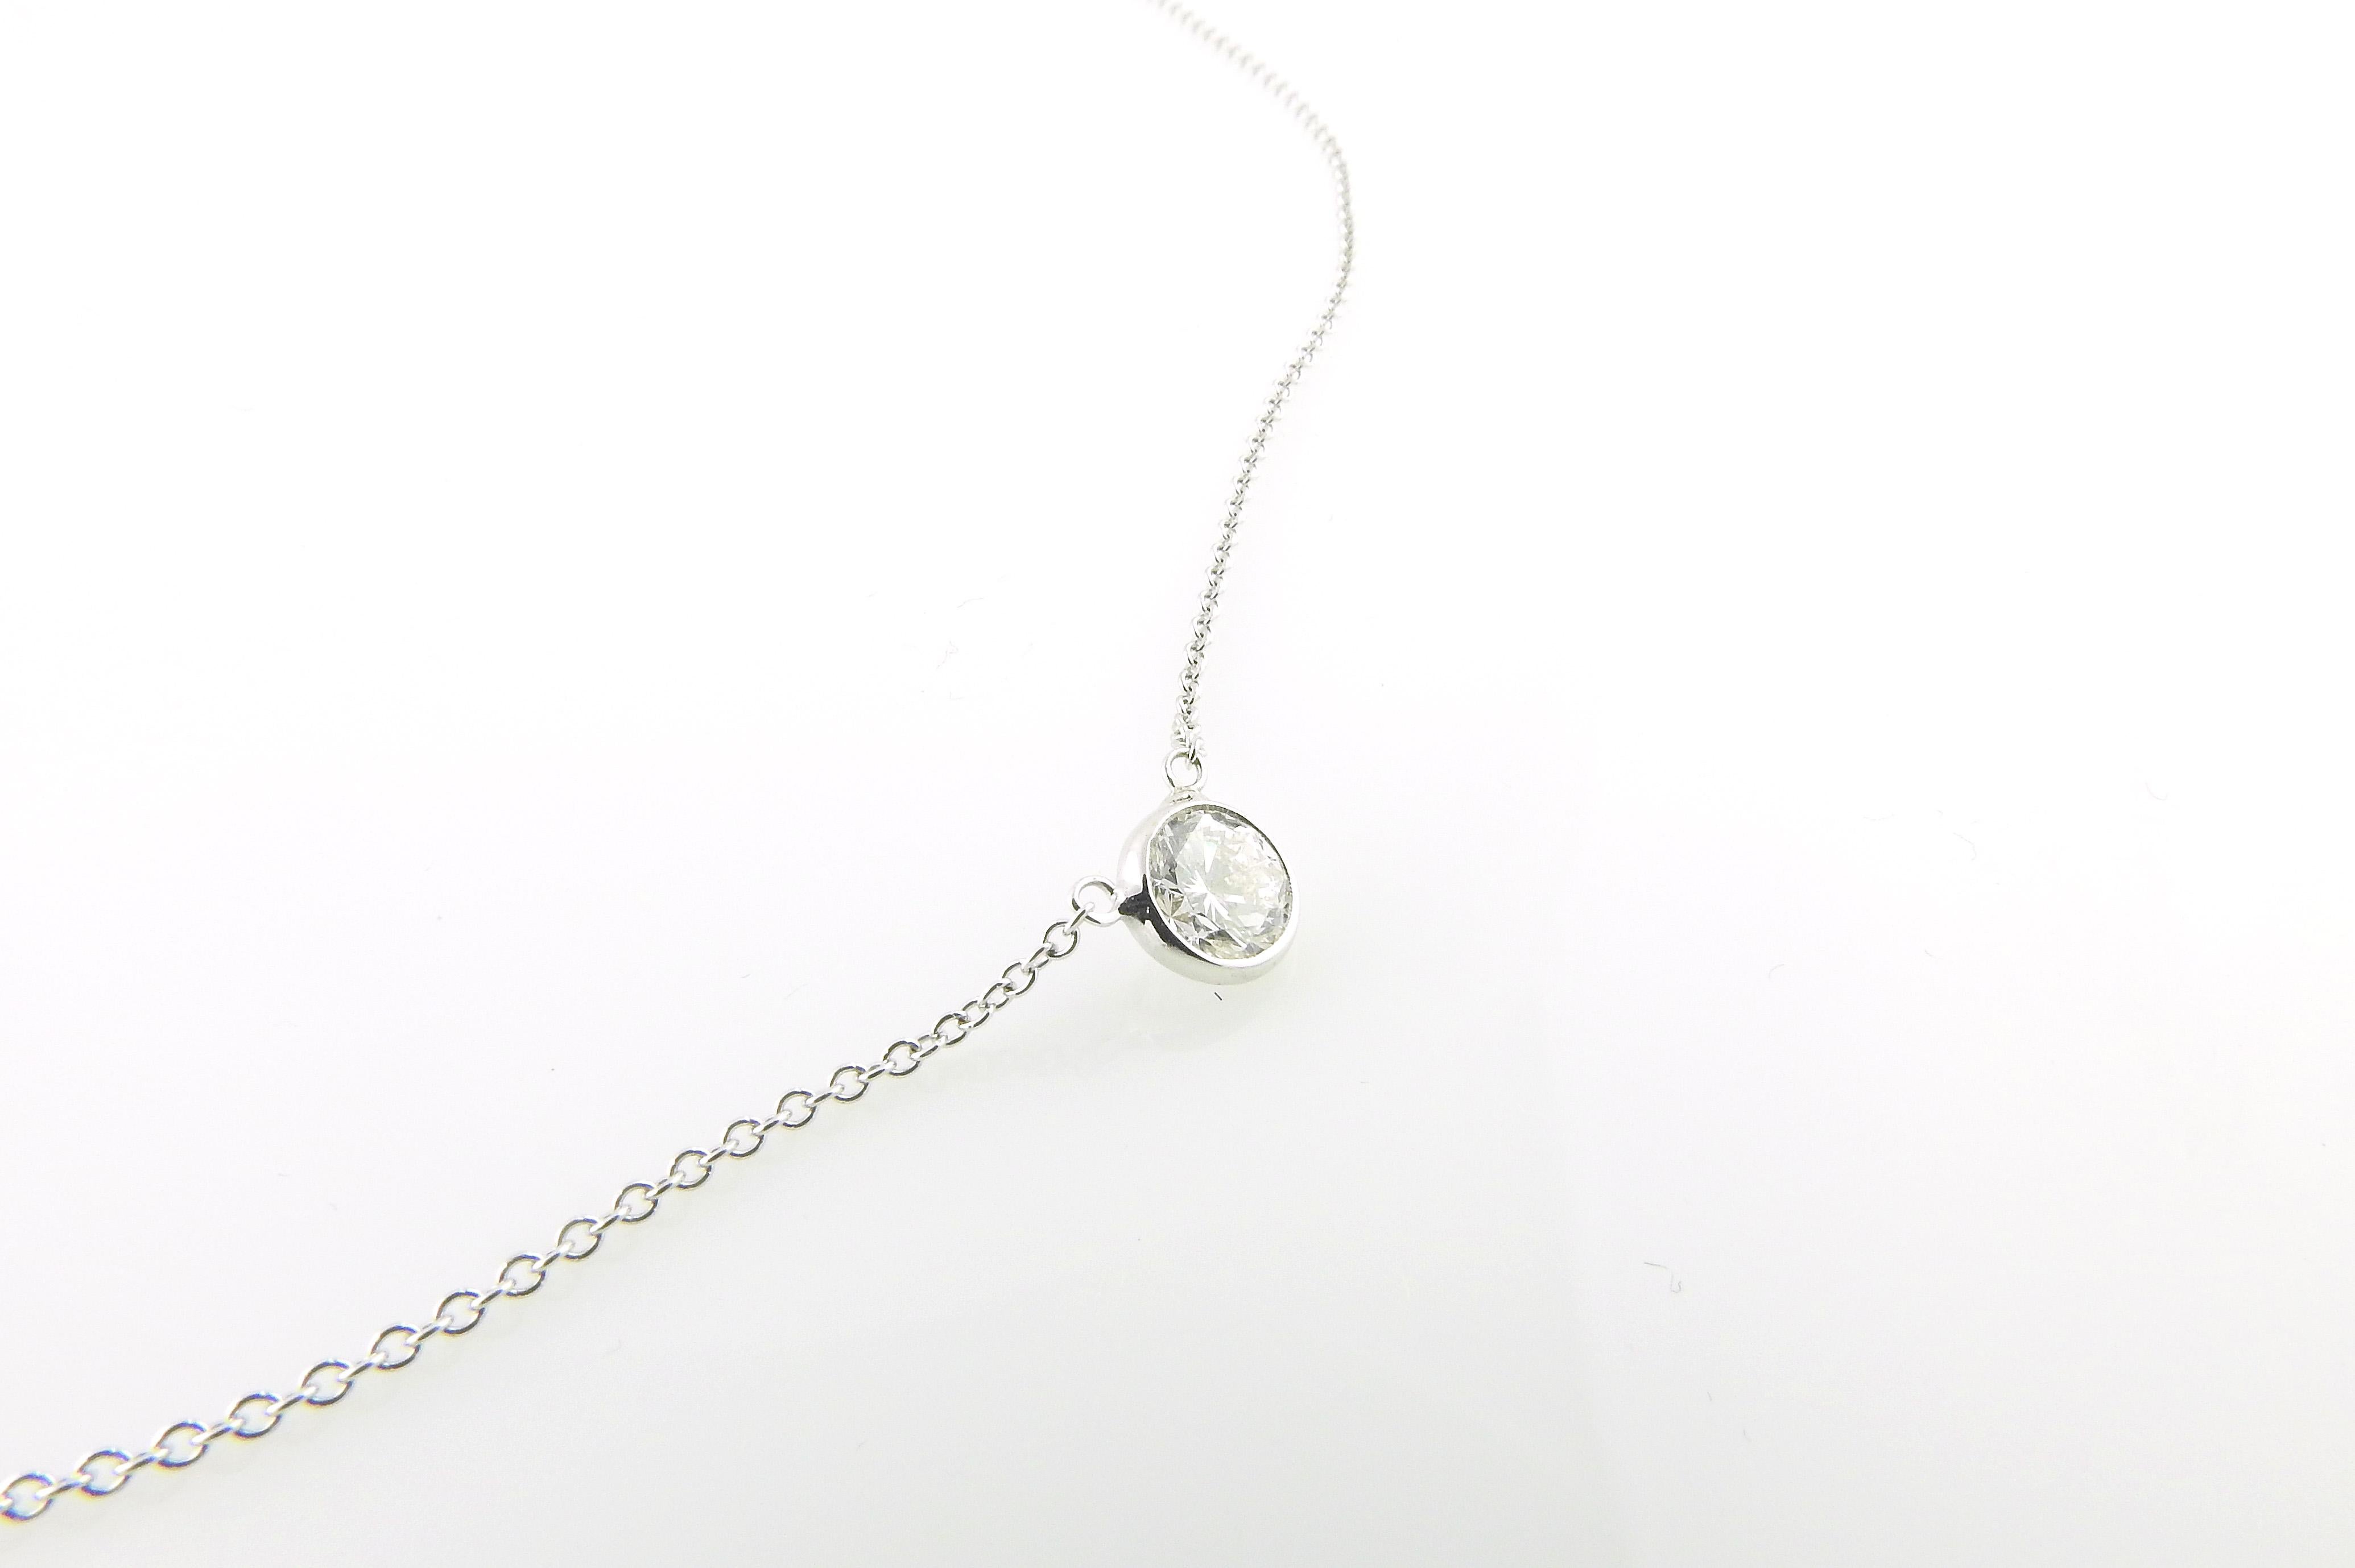 Brilliant Cut 14 Karat White Gold Diamond Solitaire Pendant Necklace 